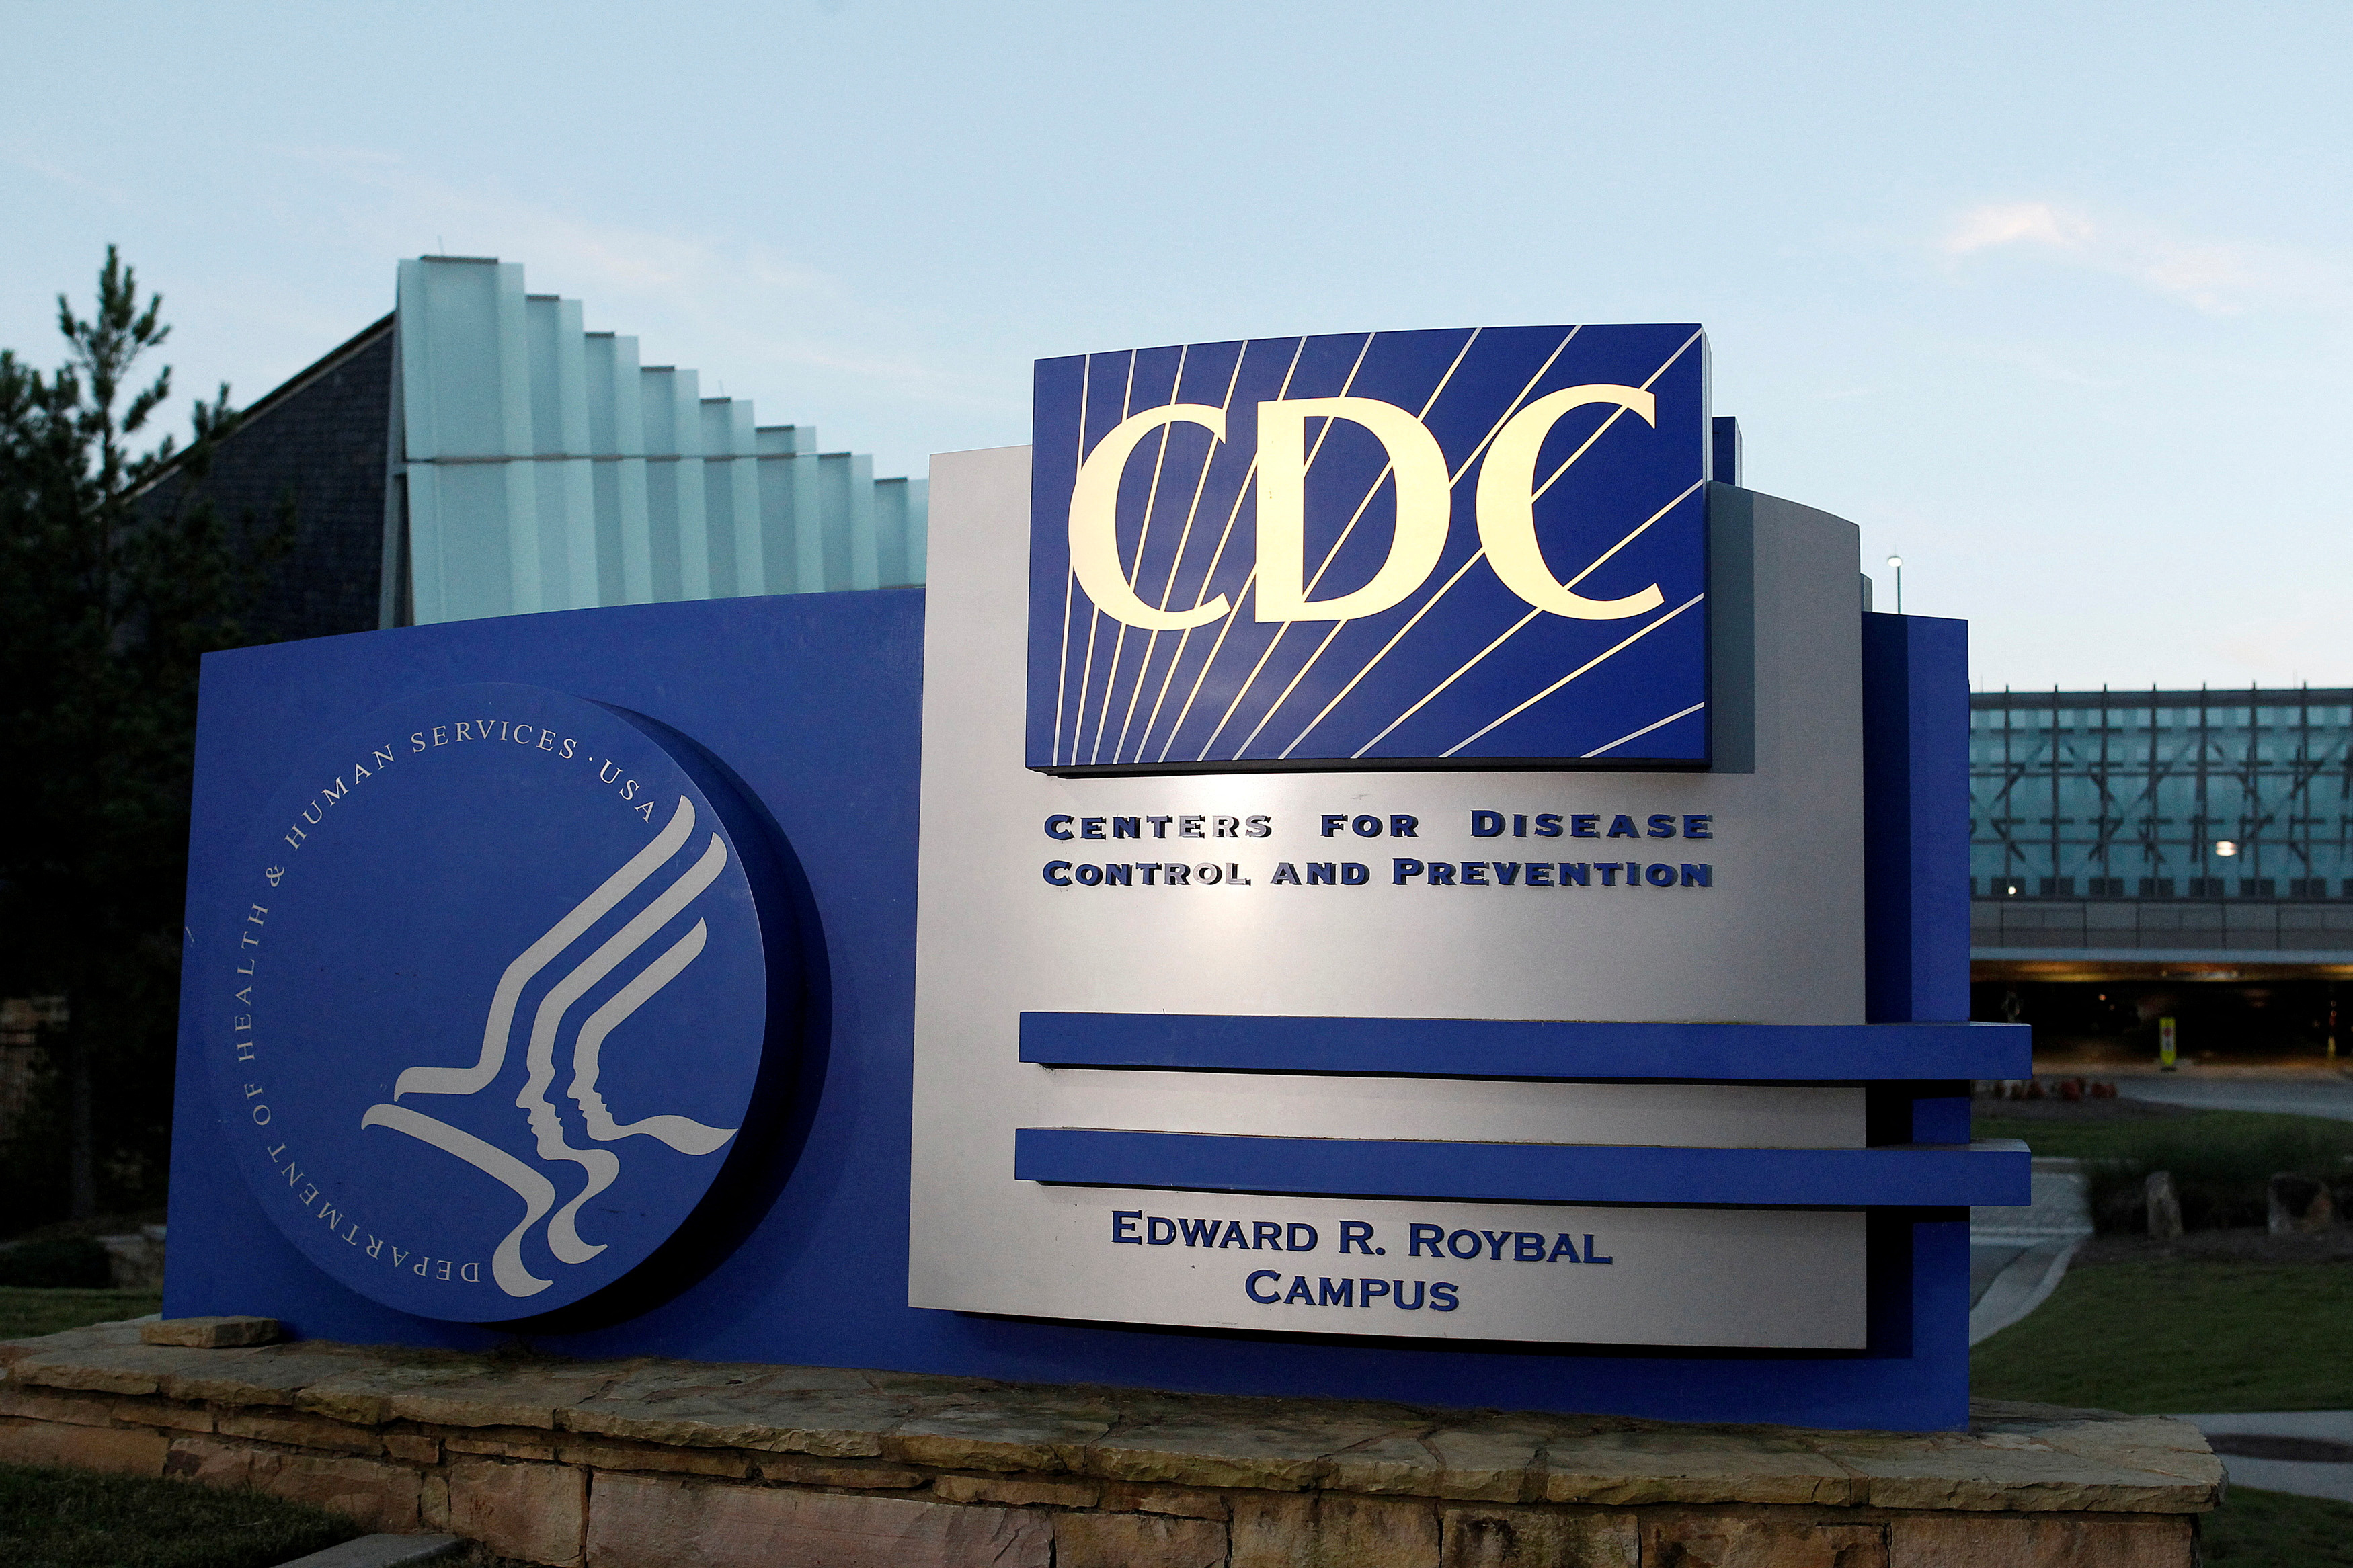 La directora de los CDC prevé cambios en la agencia tras admitir que hubo fallas en la respuesta contra el COVID 19